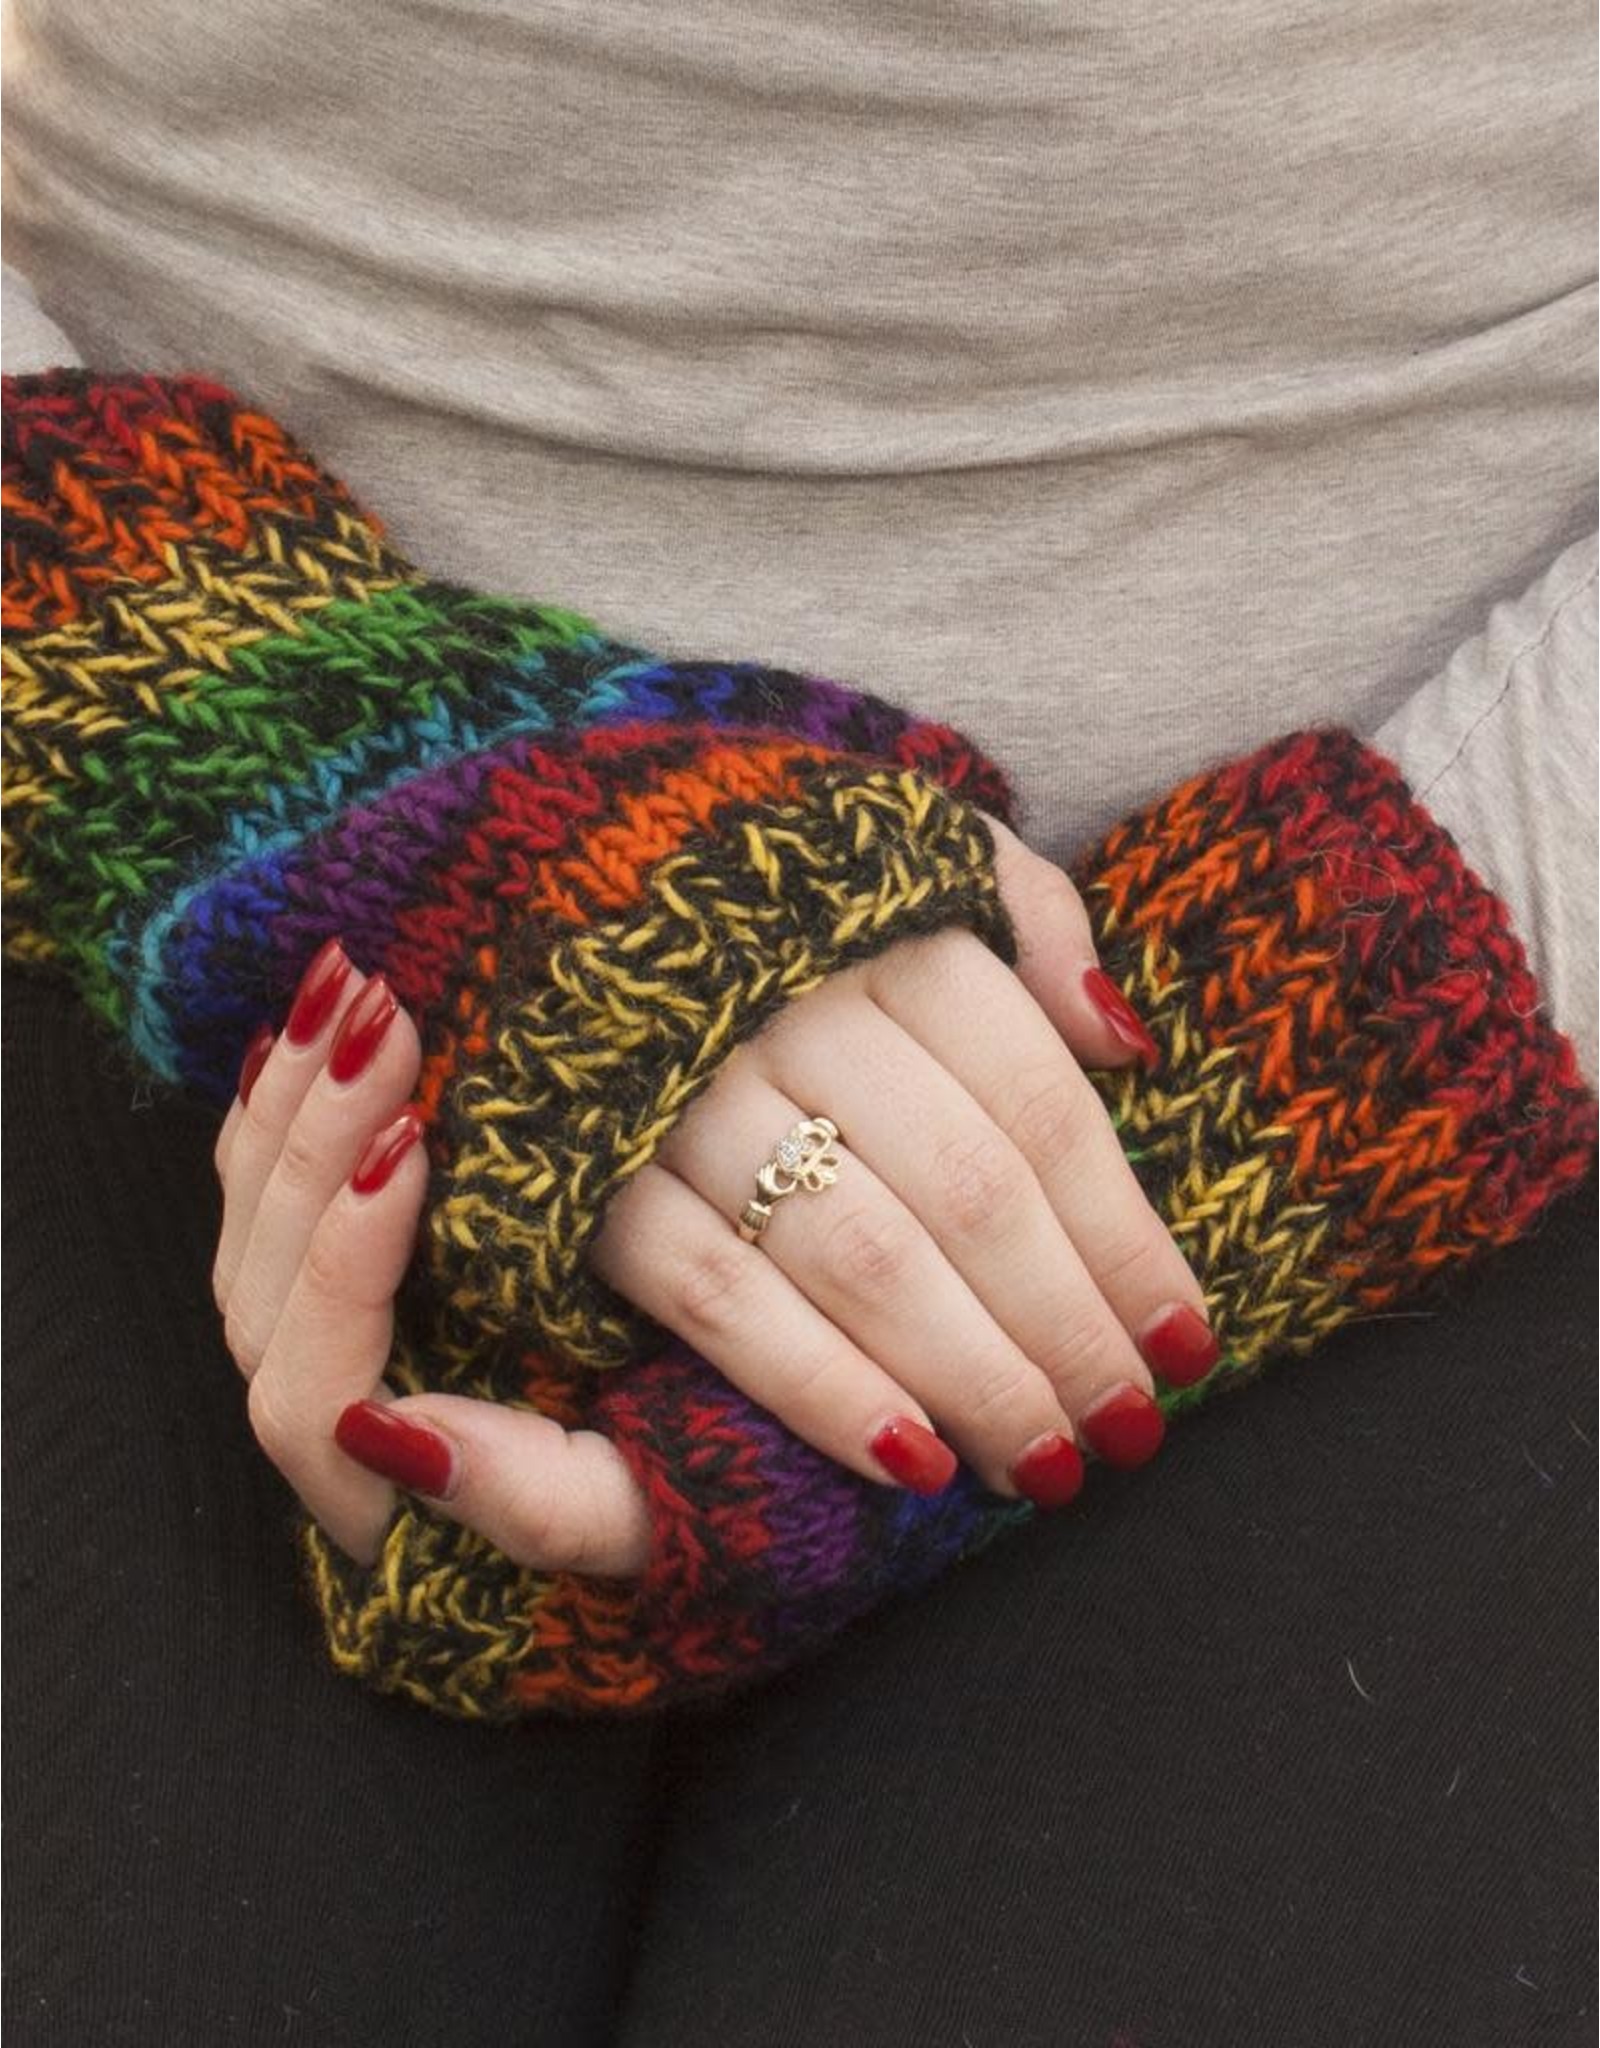 The Sweater Venture Snowfox Fleece Lined Wristlets